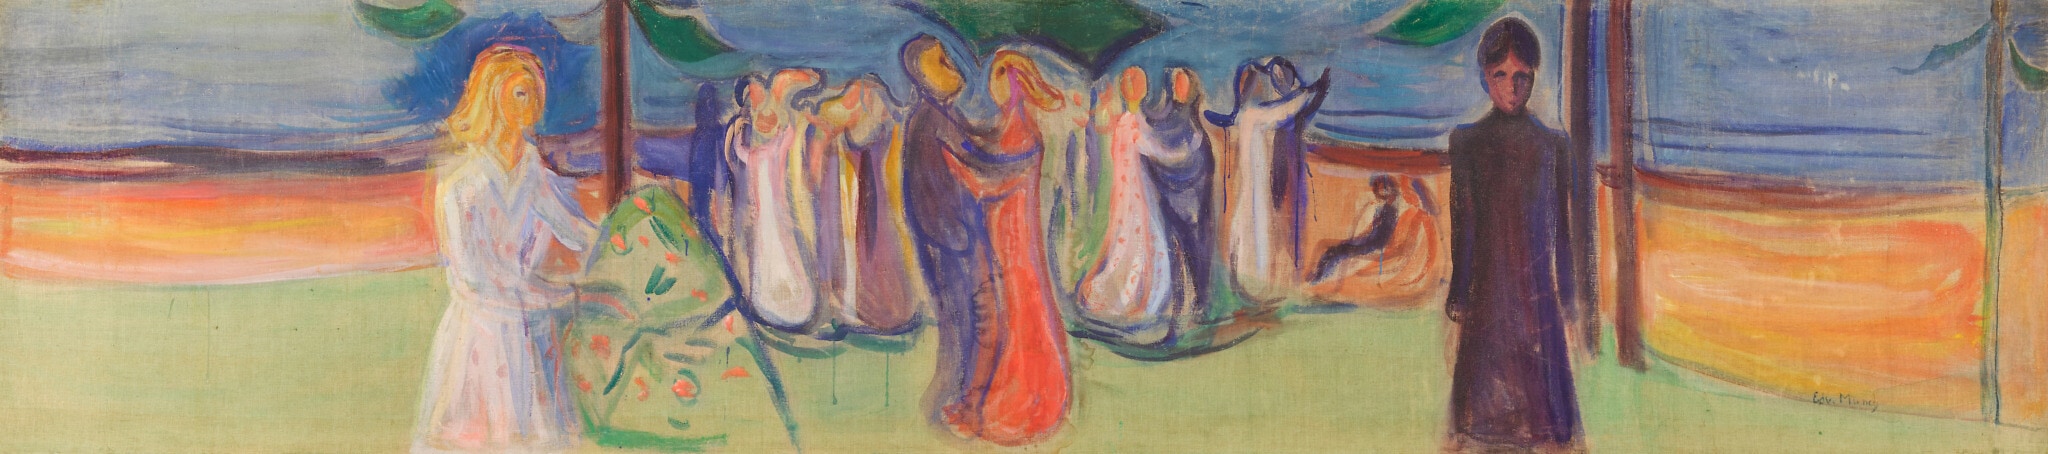 "ריקוד על החוף" מאת אדוורד מונק (צילום: Reinhardt Frieze, Courtesy of Sotheby's)